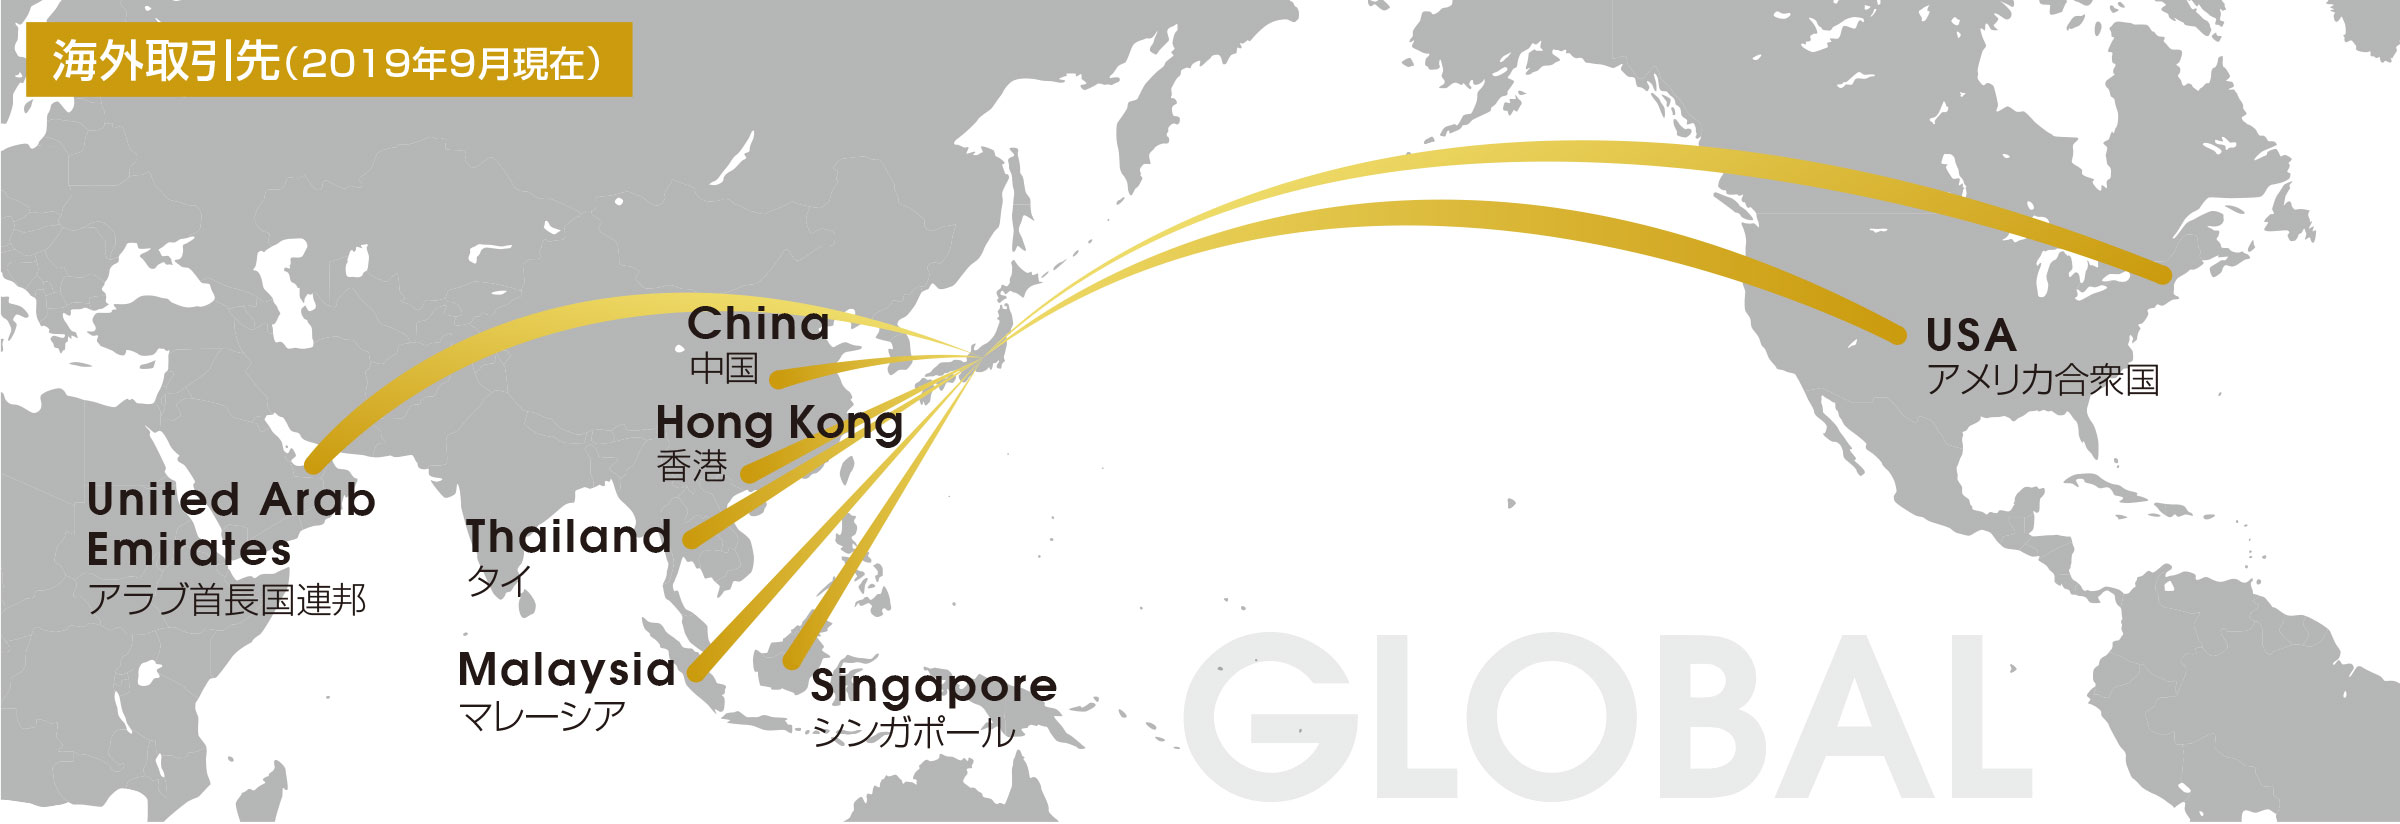 海外取引先（2019年9月現在）.中国、香港、シンガポール、タイ、マレーシア、アラブ首長国連邦、アメリカ合衆国